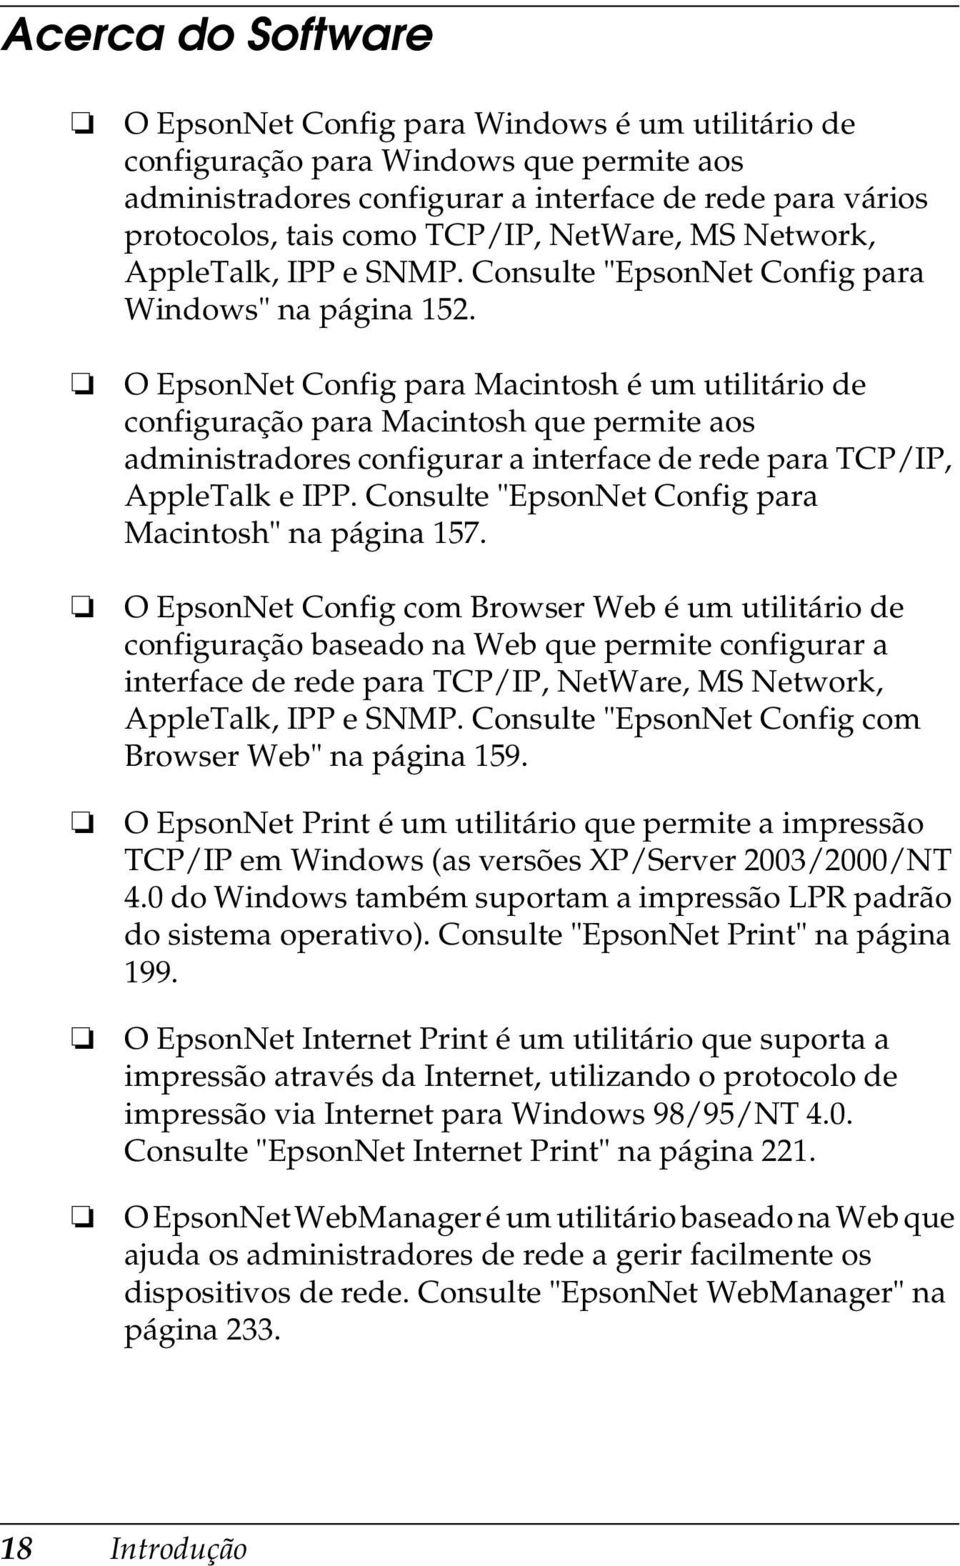 O EpsonNet Config para Macintosh é um utilitário de configuração para Macintosh que permite aos administradores configurar a interface de rede para TCP/IP, AppleTalk e IPP.